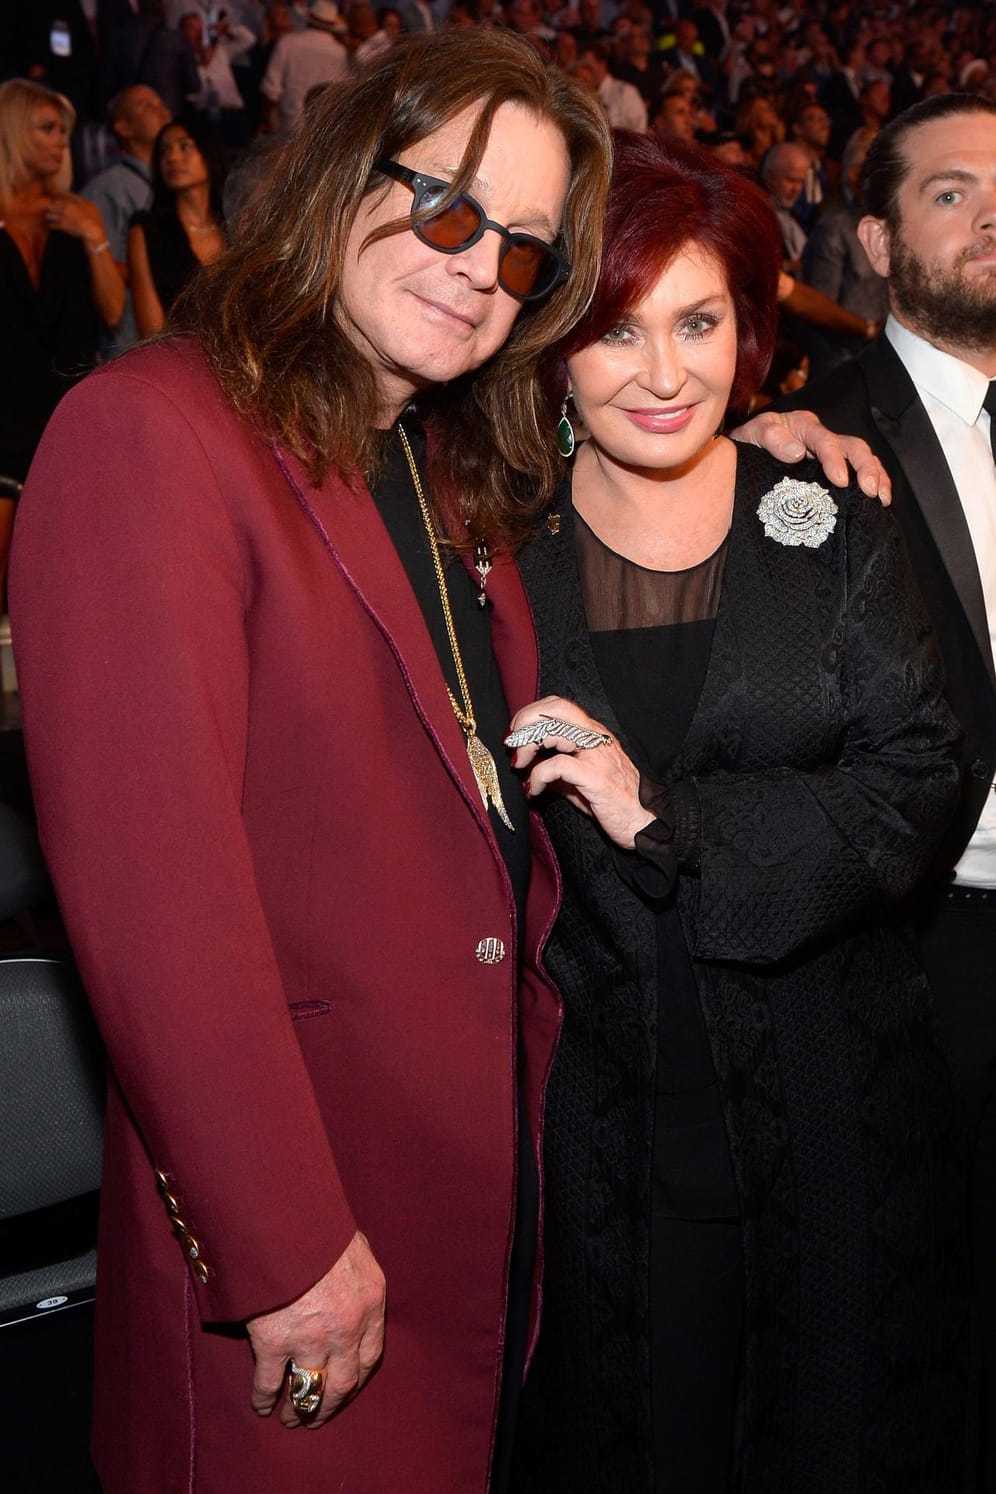 Sharon und Ozzy Osbourne: Wie die Moderatorin in einem Interview mit "Telegraph" verriet, hatte der Musiker gleich mehrere Affären. Trotzdem sind die beiden bis heute verheiratet.